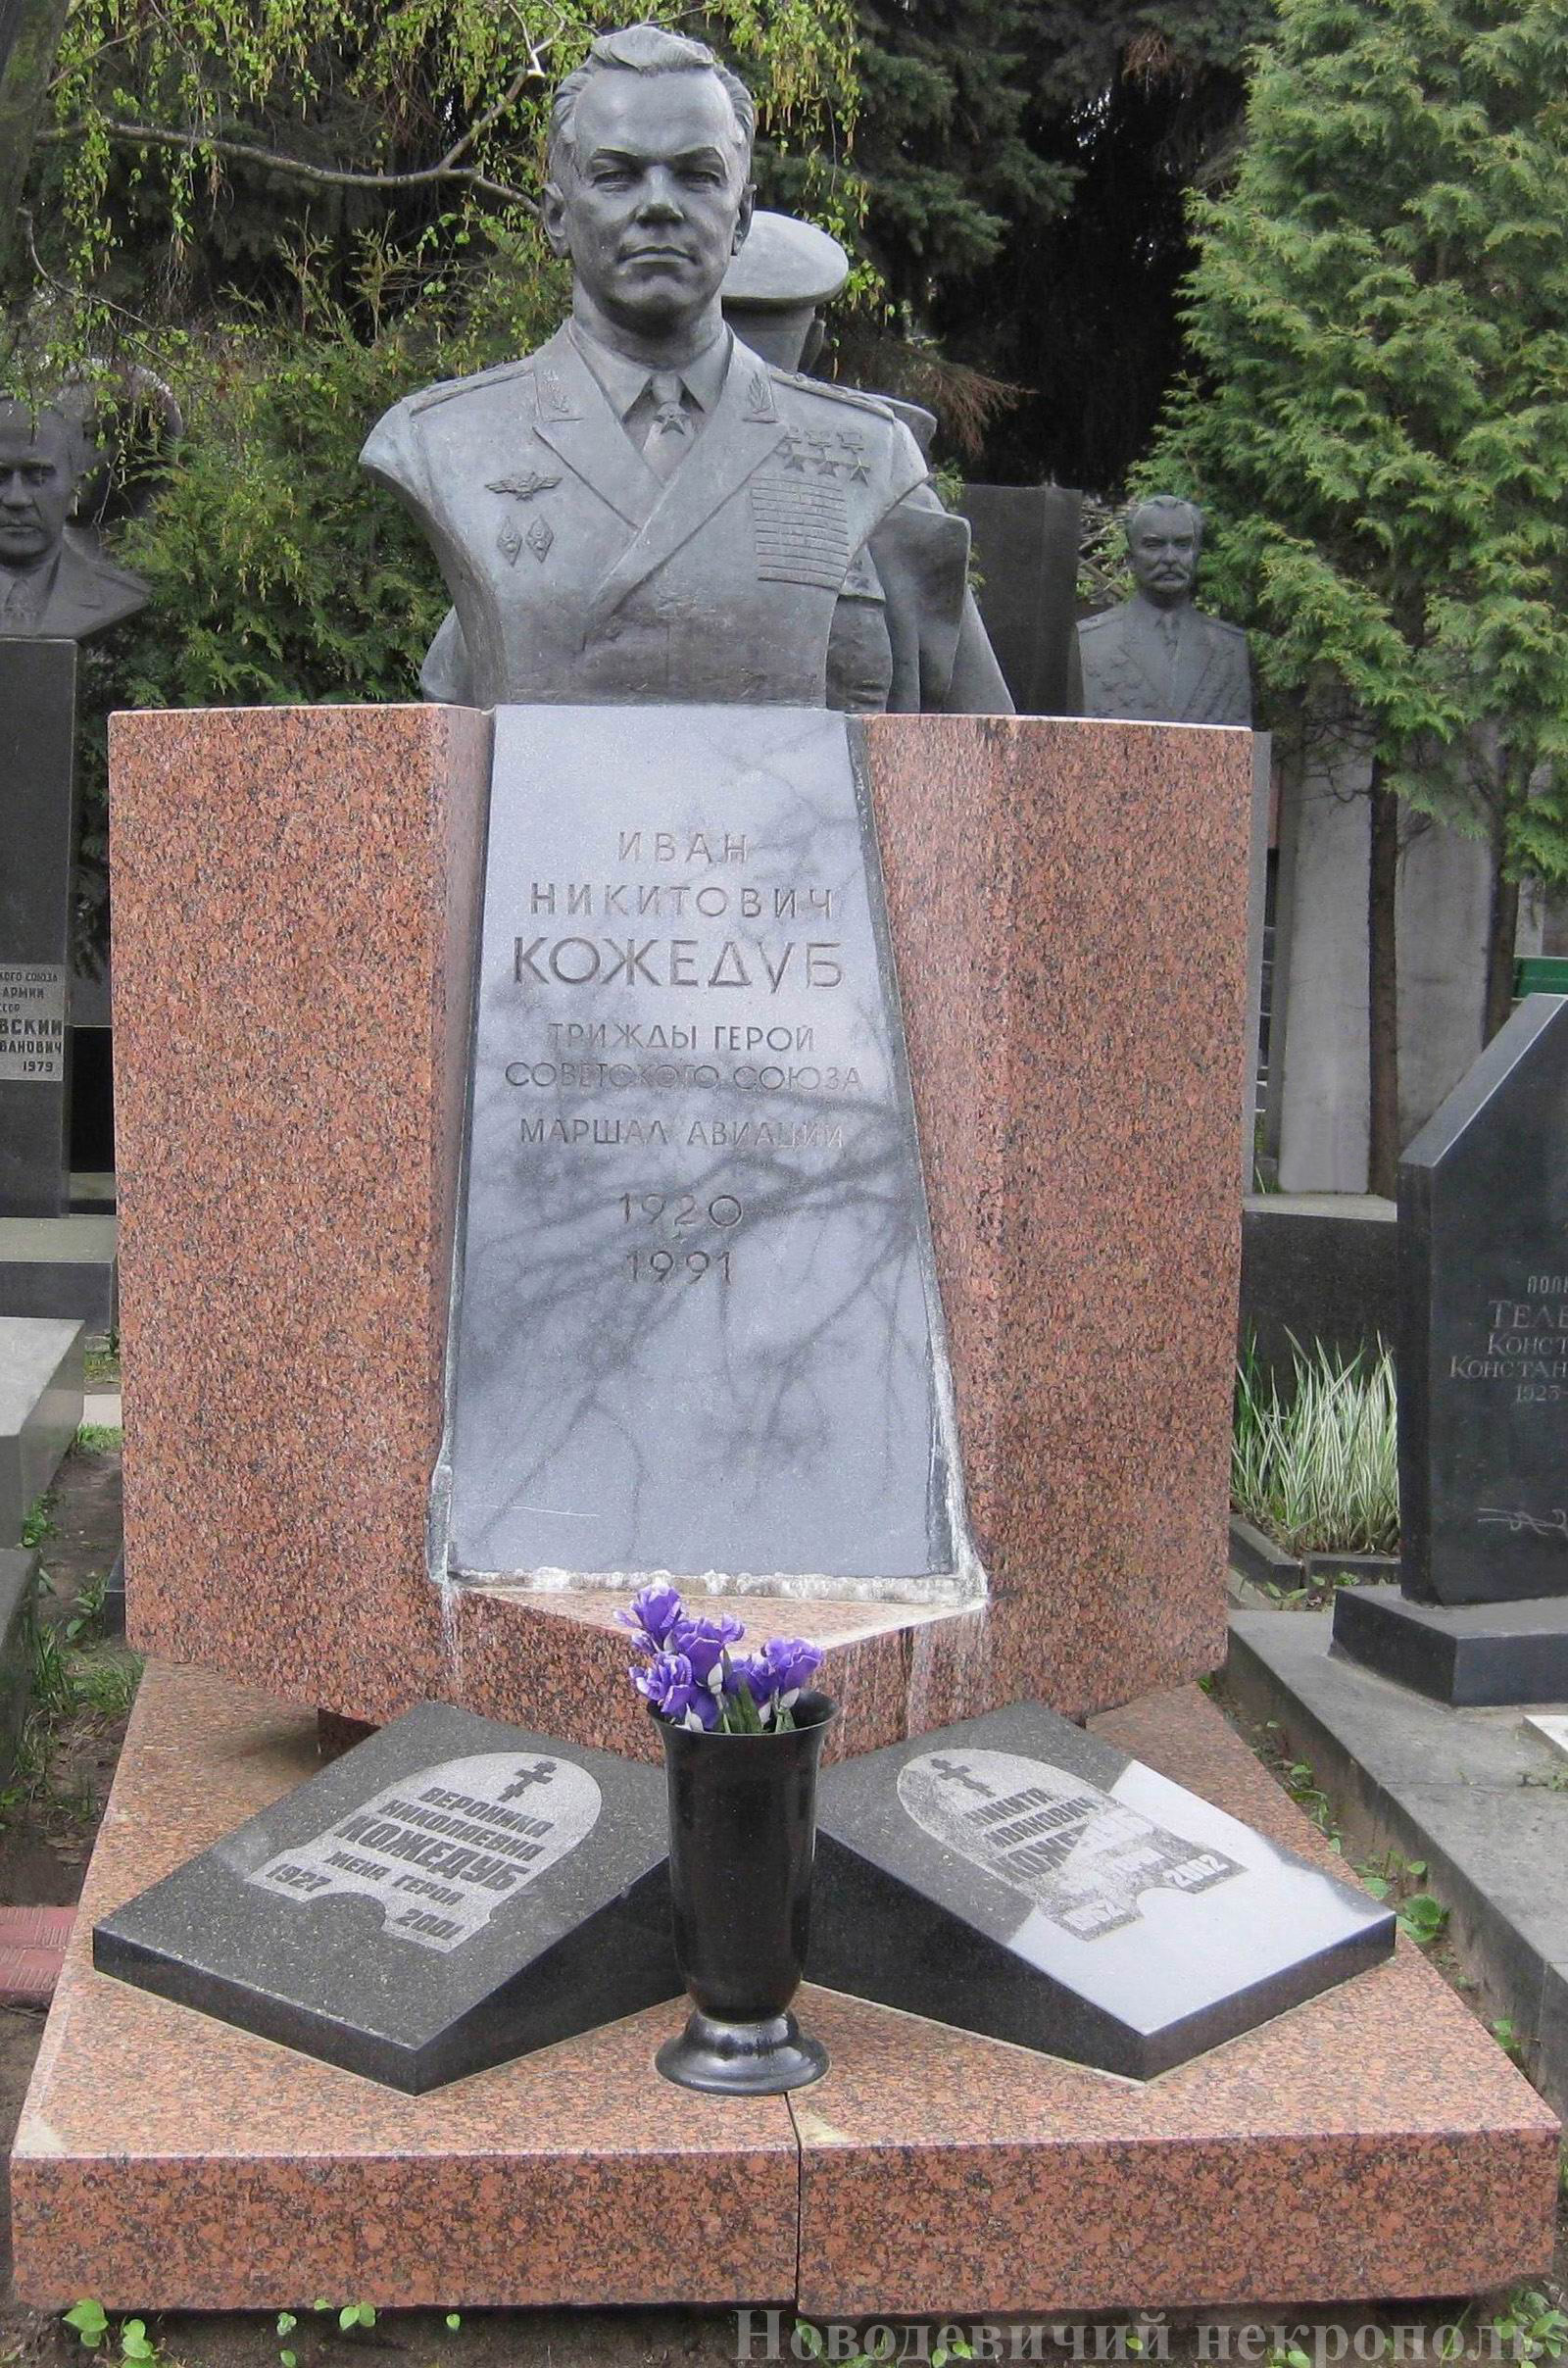 Памятник на могиле Кожедуба И.Н. (1920-1991), ск. А.Врубель, арх. Е.Ефремов, на Новодевичьем кладбище (7-18-13).